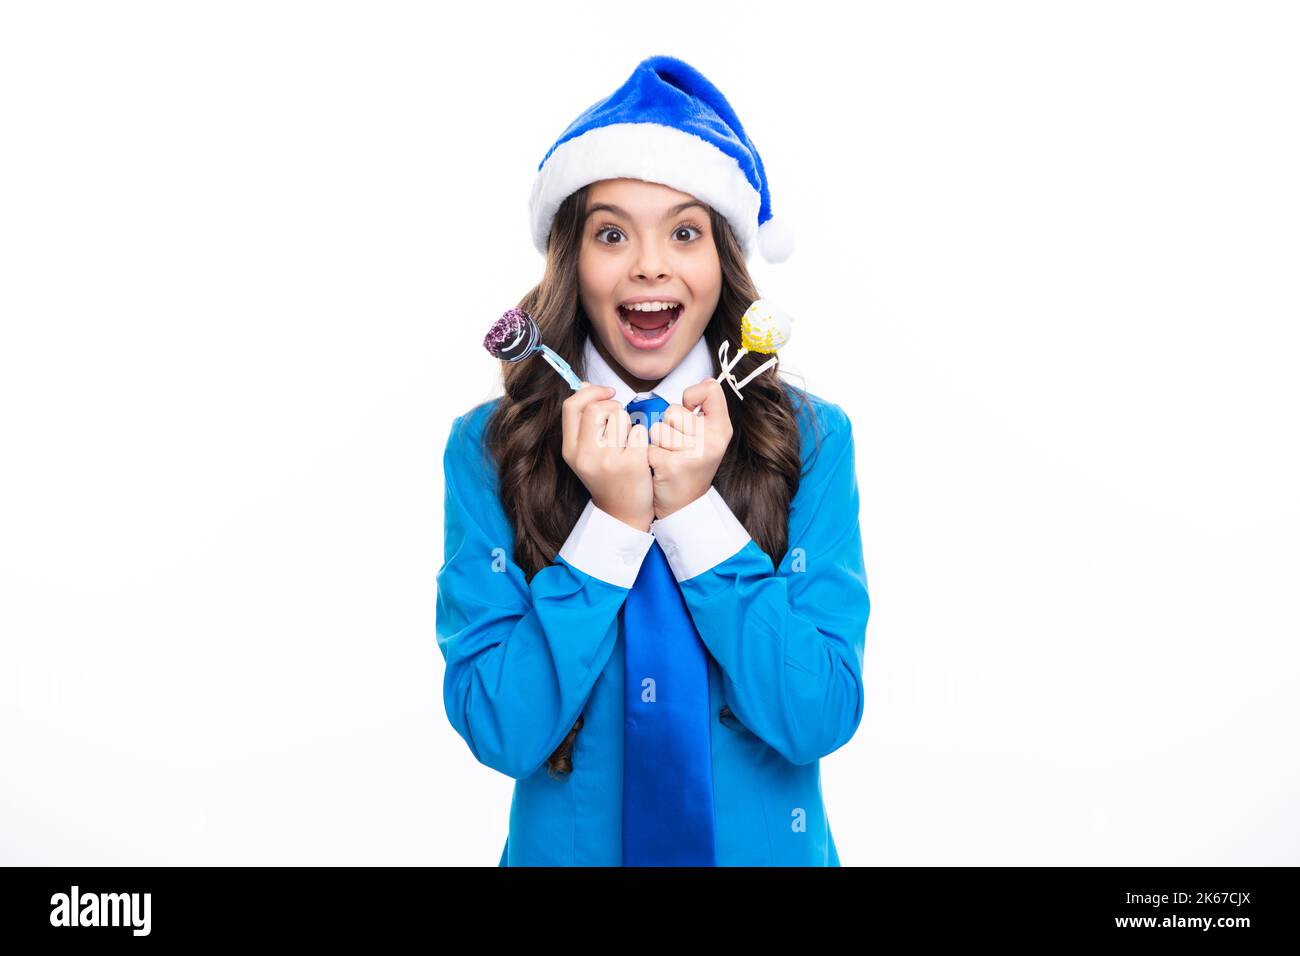 Portrait ein lächelndes Teenager-Mädchen mit blauem weihnachtsmann-Hut, Hemd und Krawatte halten weihnachtsbonbons Lollipop isoliert auf weißem Hintergrund. Frohe Weihnachten Stockfoto